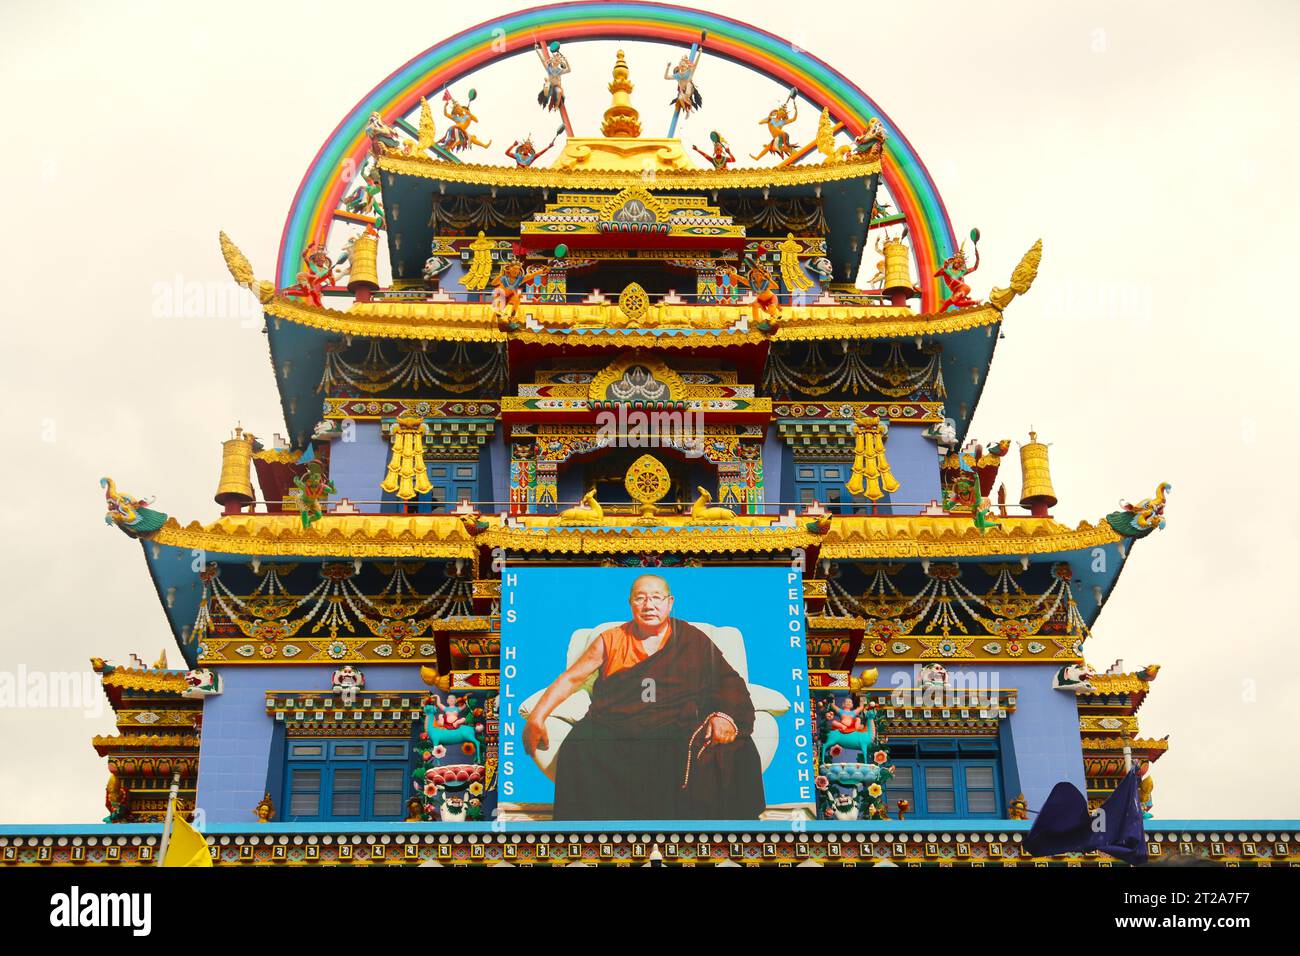 5 août 2018, Coorg, Karnataka. Namdroling Monastery de Coorg. Statues dans un célèbre monastère bouddhiste du sud de l'inde également connu sous le nom de Temple d'Or. Banque D'Images